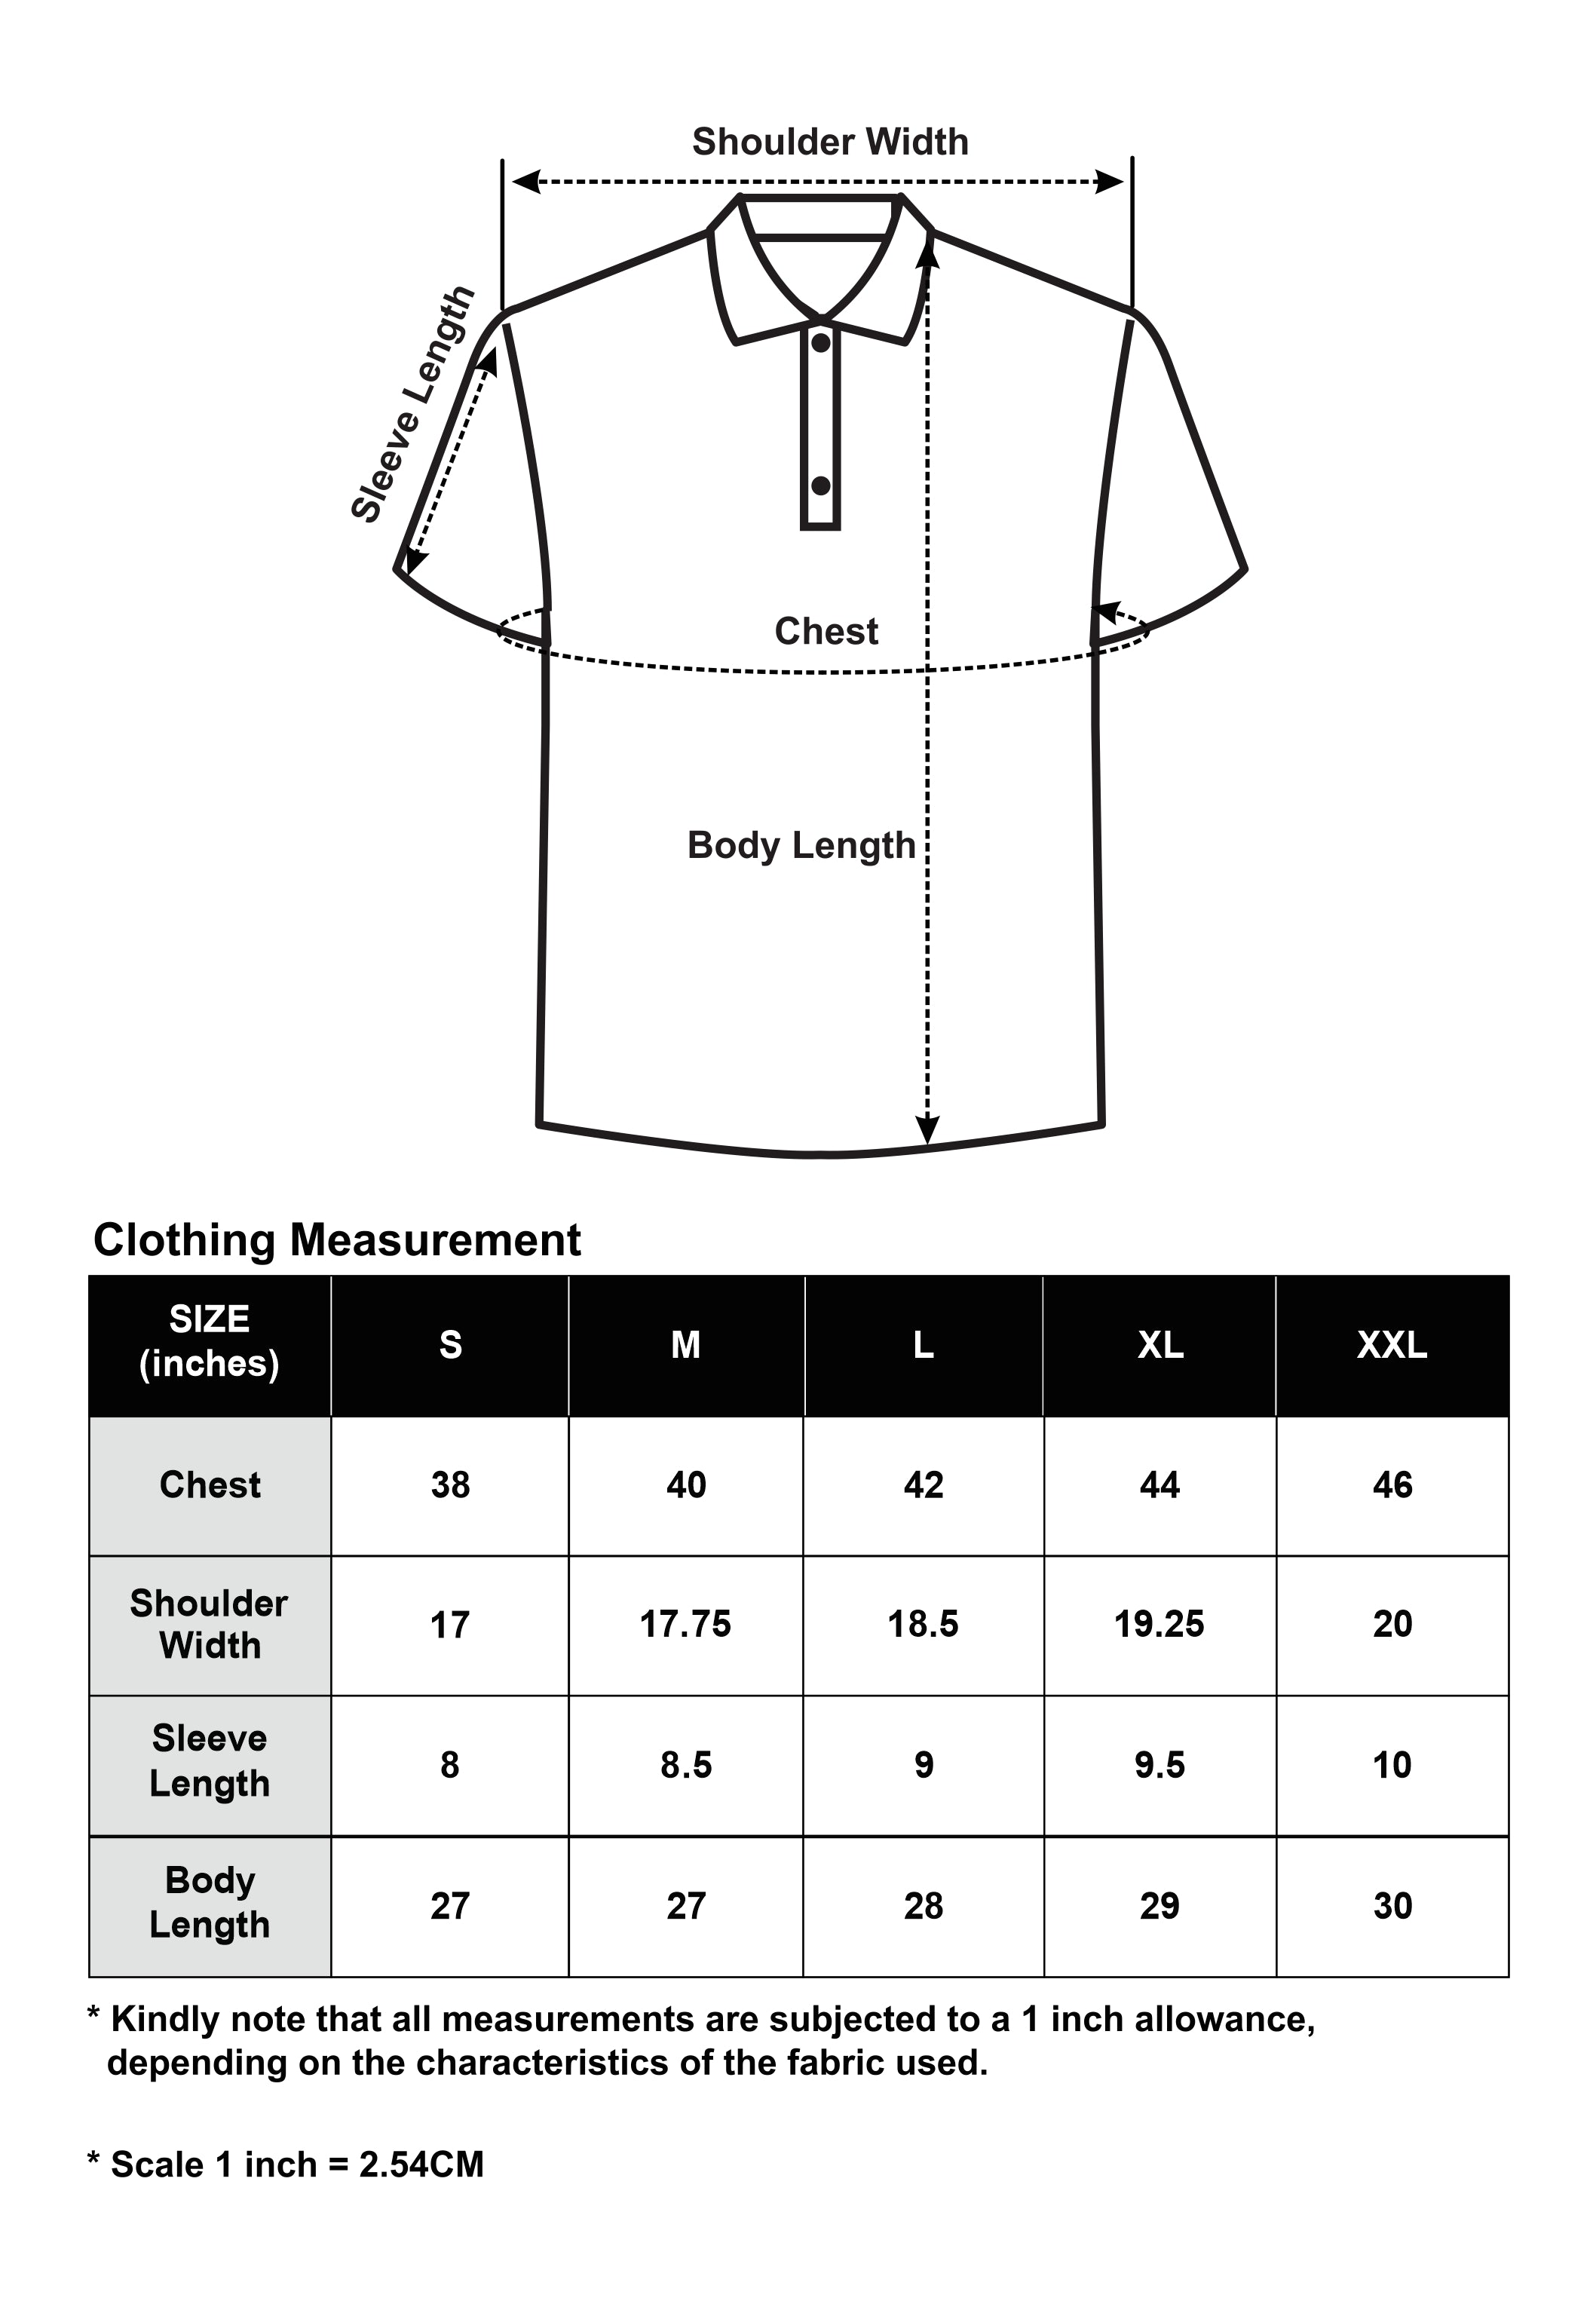 CTH unlimited Liquid Ammonia Yarn  Short Sleeve Polo Shirt - CU-70060